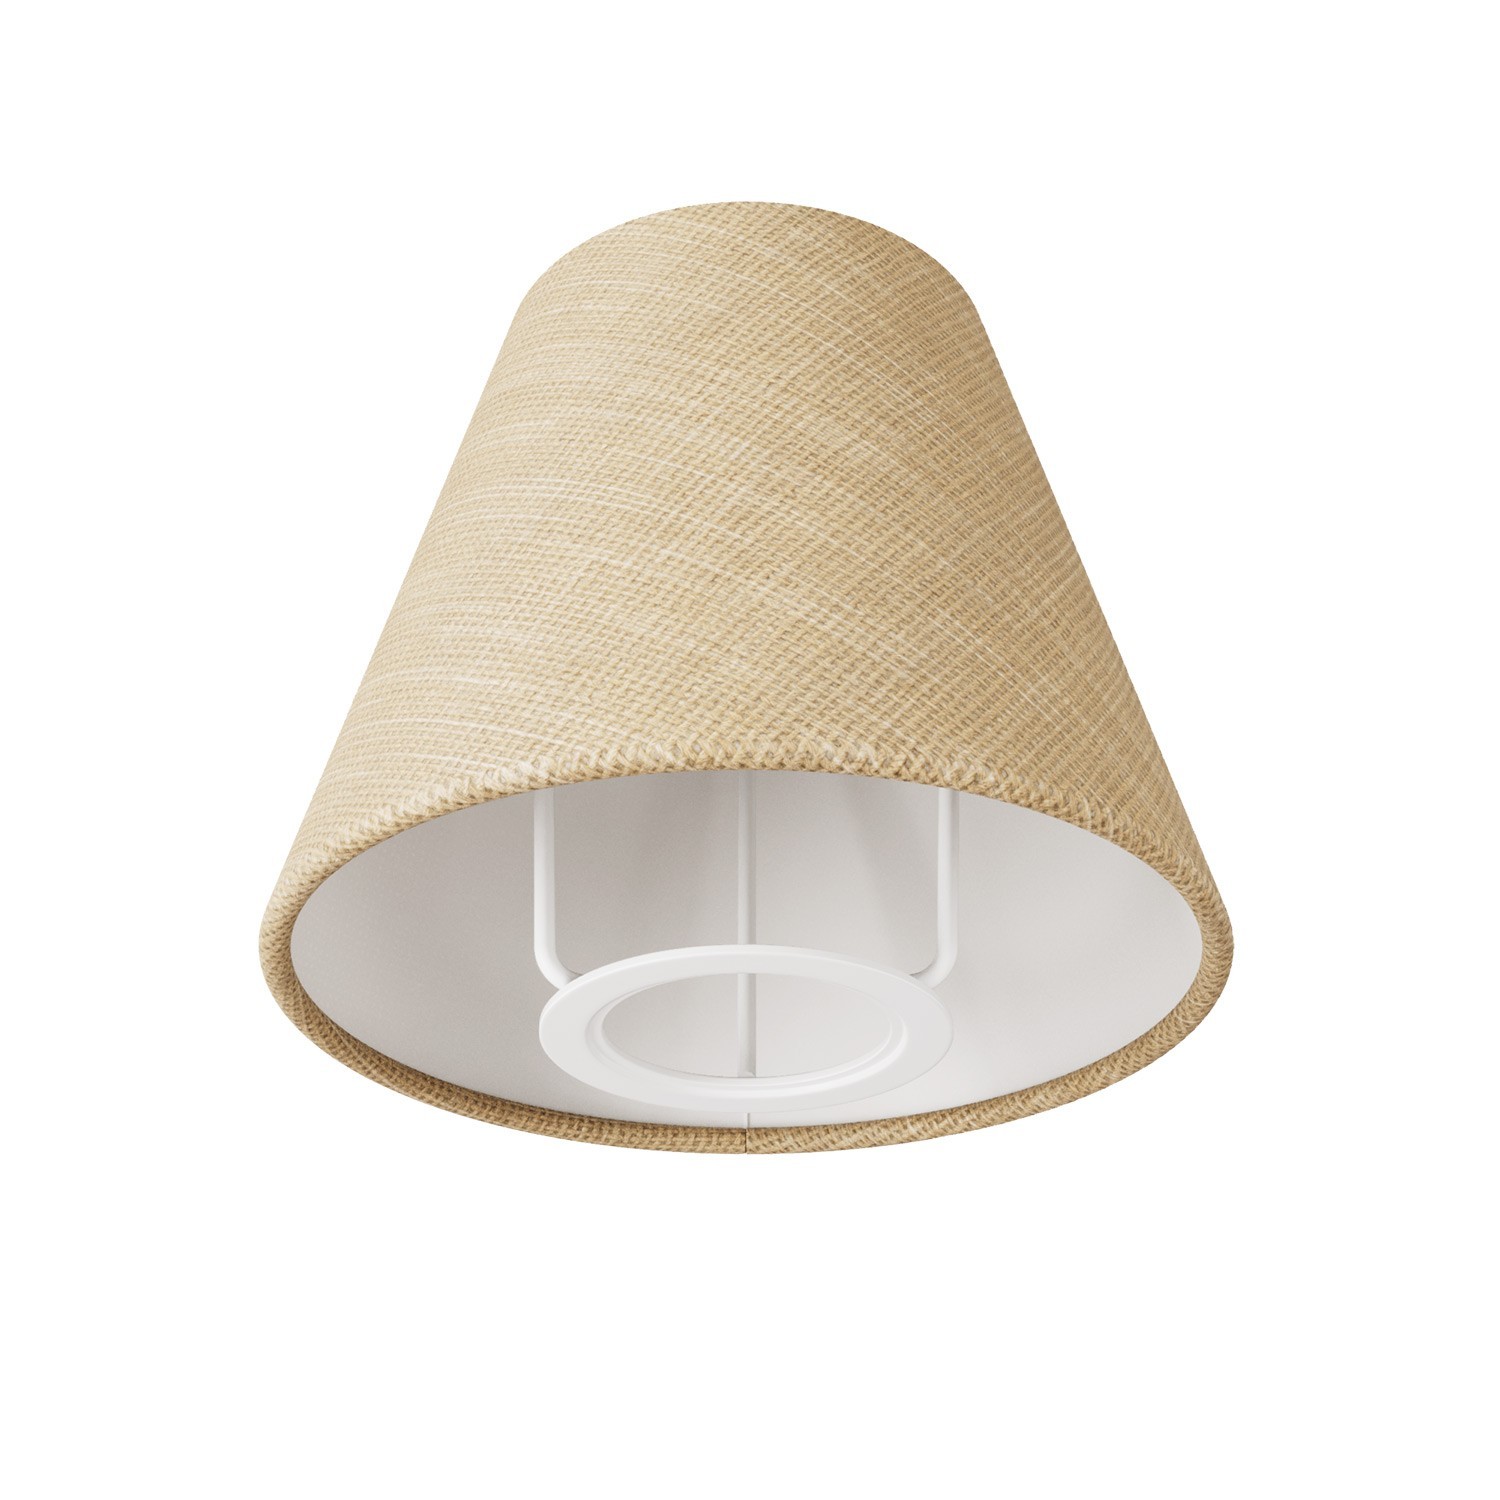 Mini Pantalla Impero con casquillo E27 para lámpara de mesa o aplique